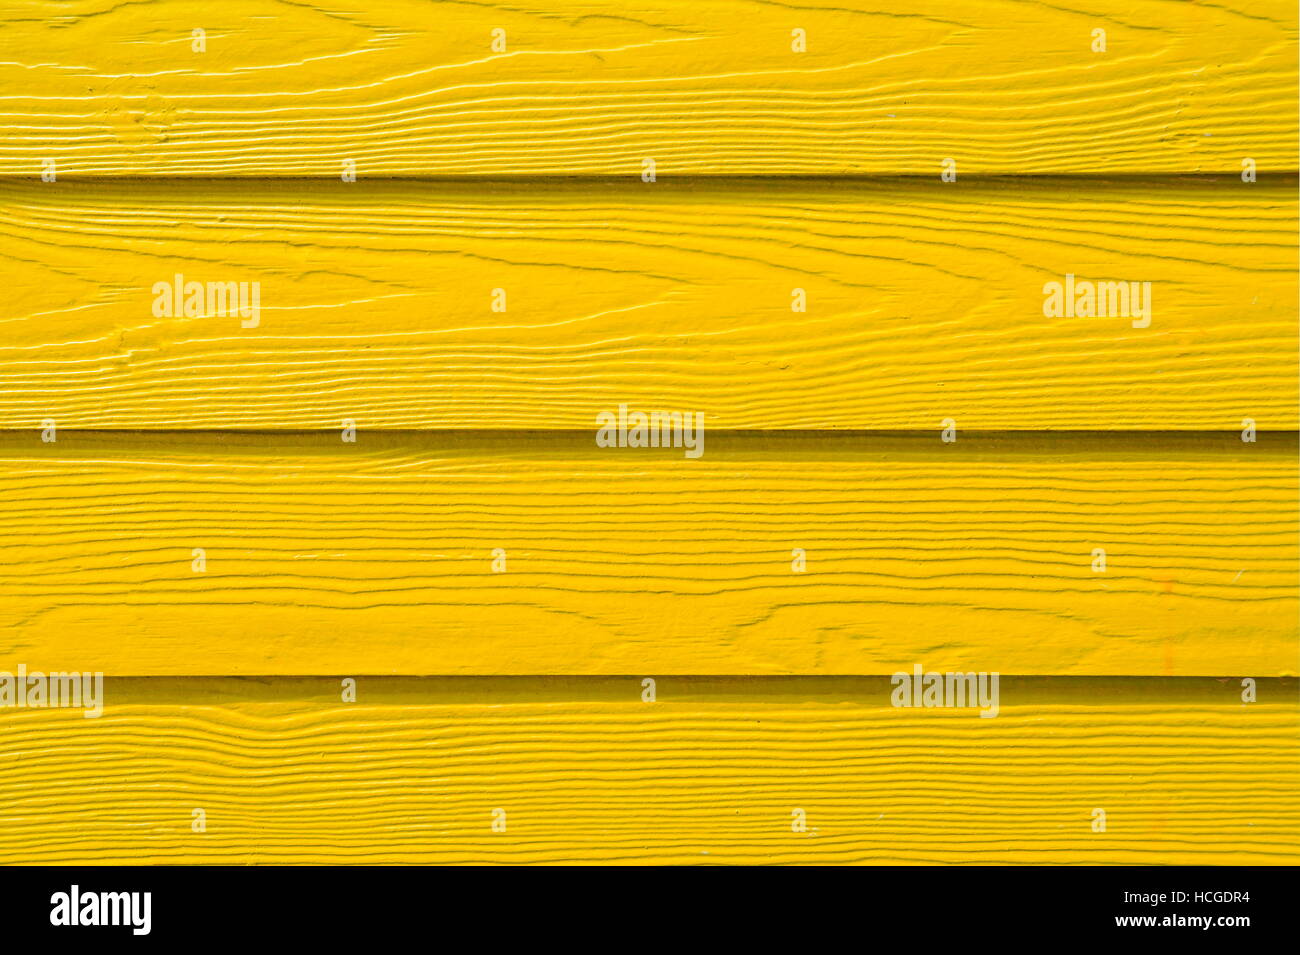 Bunte hölzerne Bords in gelb lackiert. Holz-Hintergrund Stockfoto